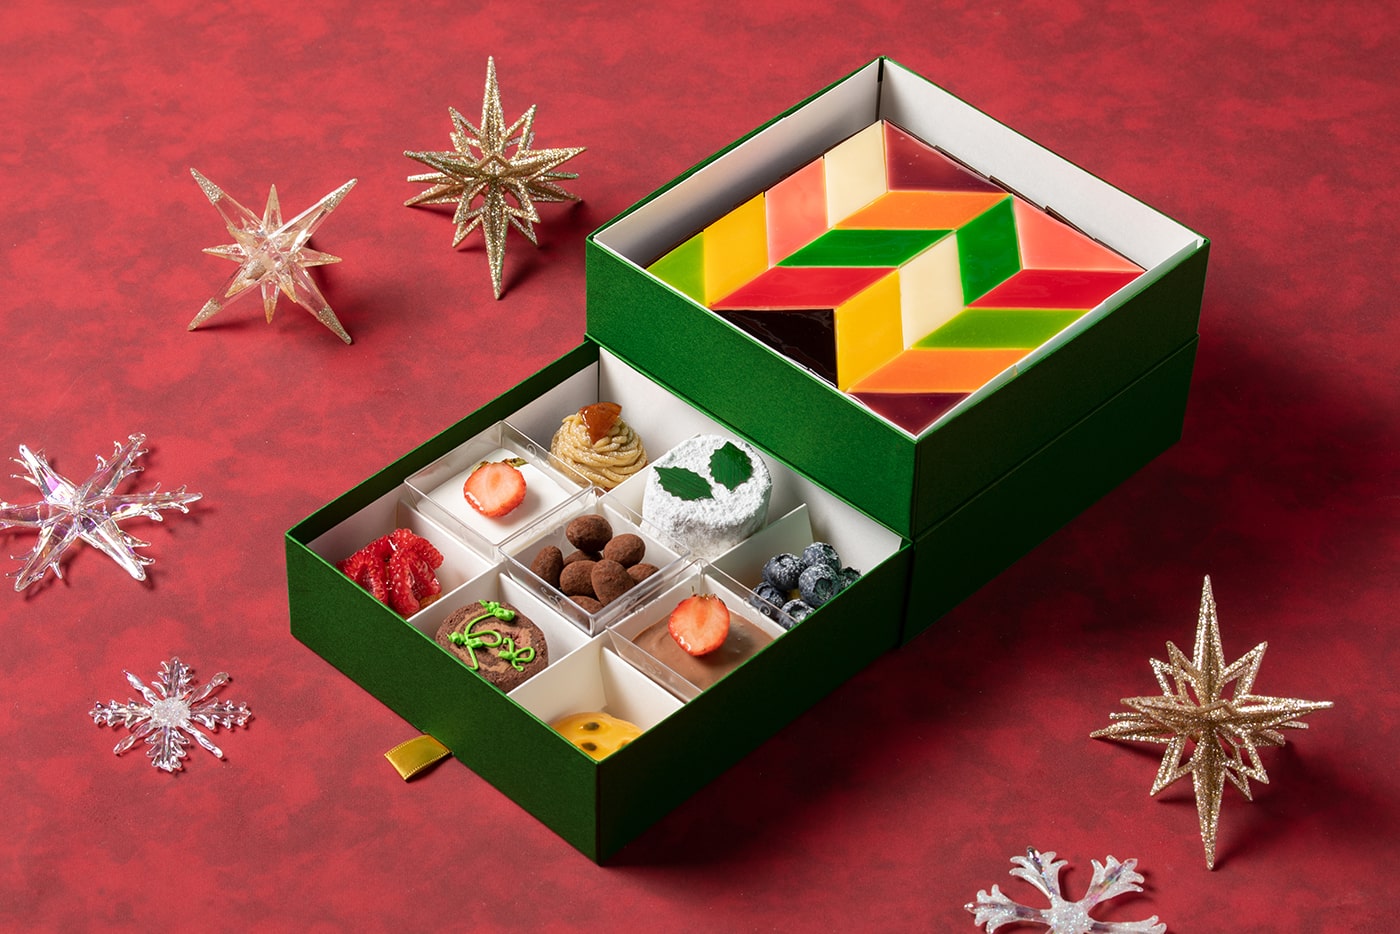 Grand Hyatt Tokyo's Christmas Cake Selection 2021 | Restaurants at a  luxurious Roppongi hotel, Grand Hyatt Tokyo